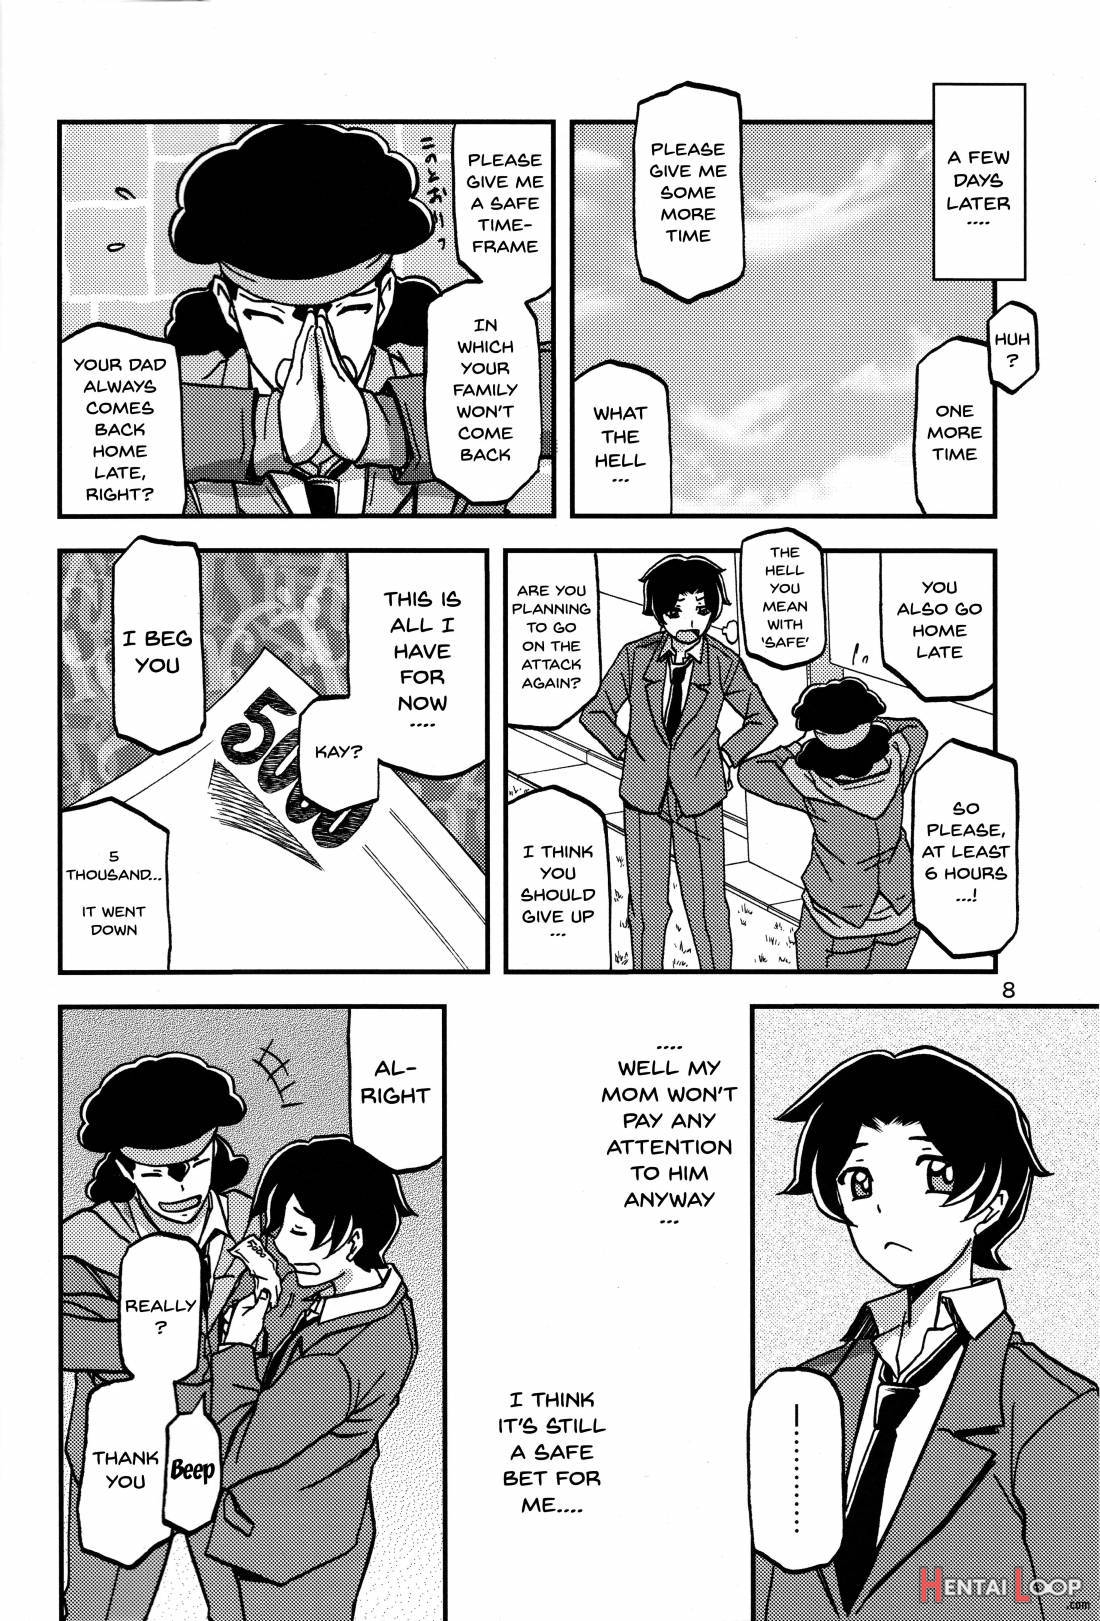 Akebi No Mi - Misora page 7